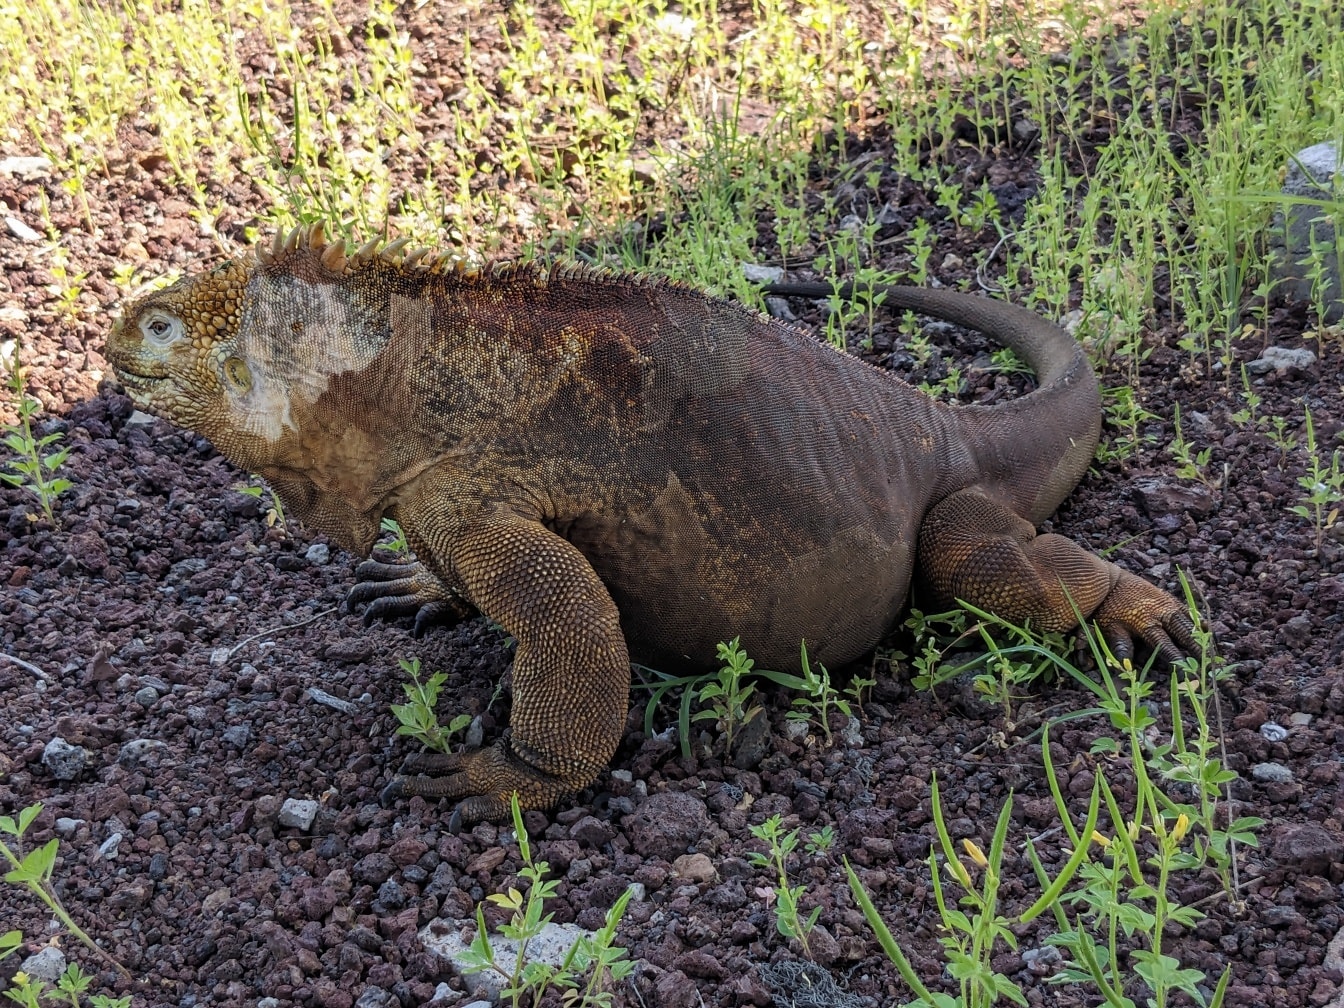 A iguana de Galápagos, uma espécie muito grande de lagarto (Conolophus subcristatus)